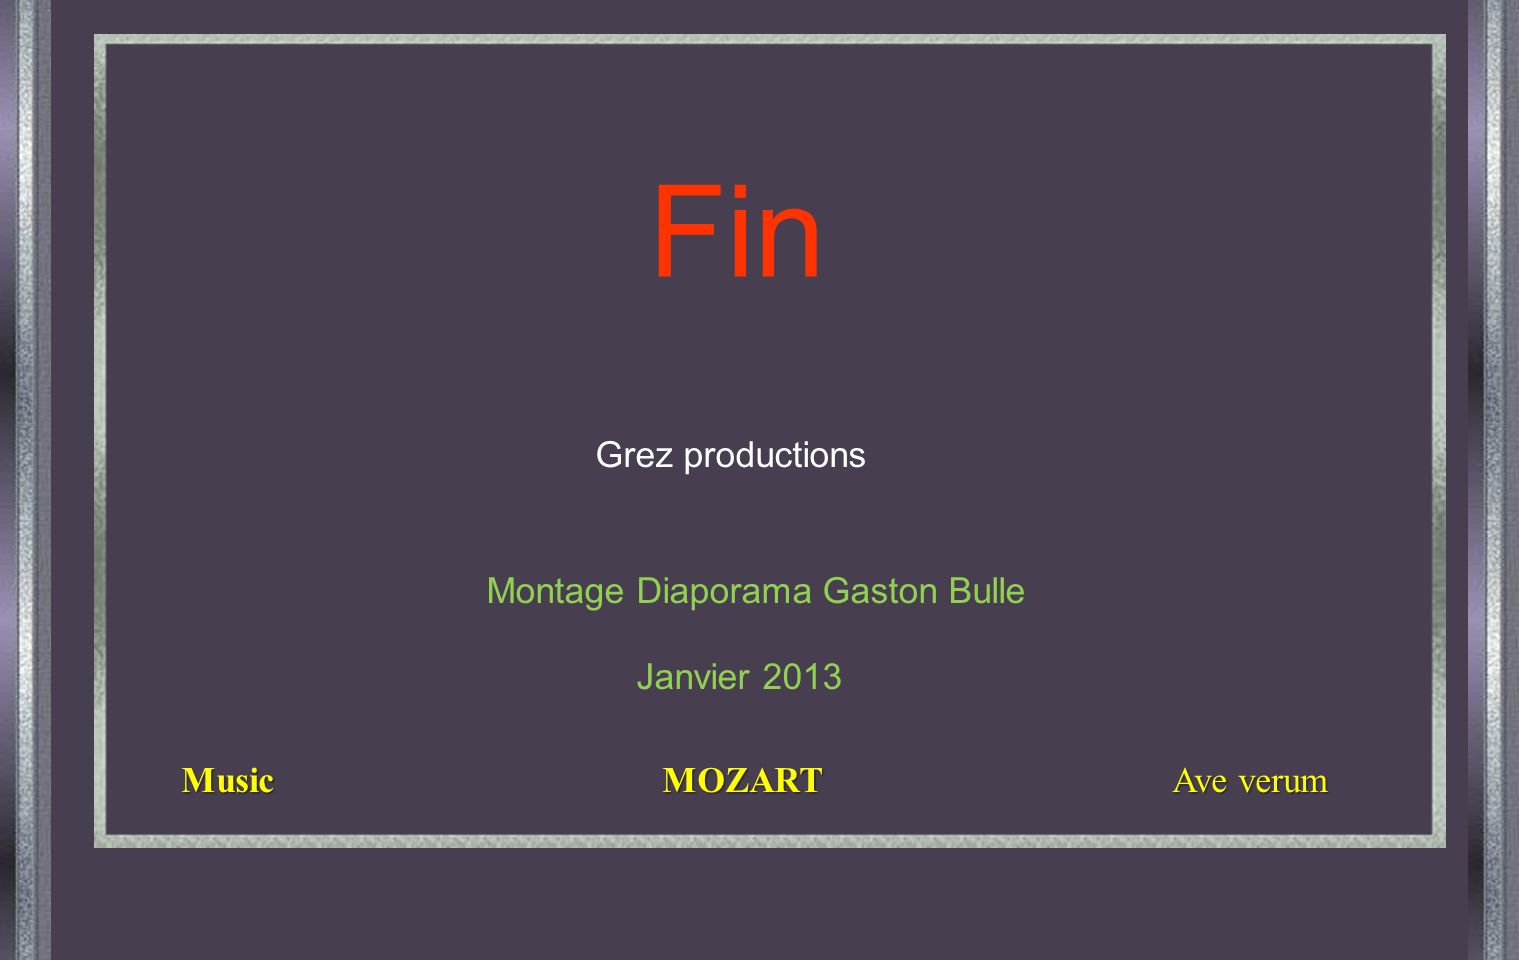 Fin Grez productions Montage Diaporama Gaston Bulle Janvier 2013